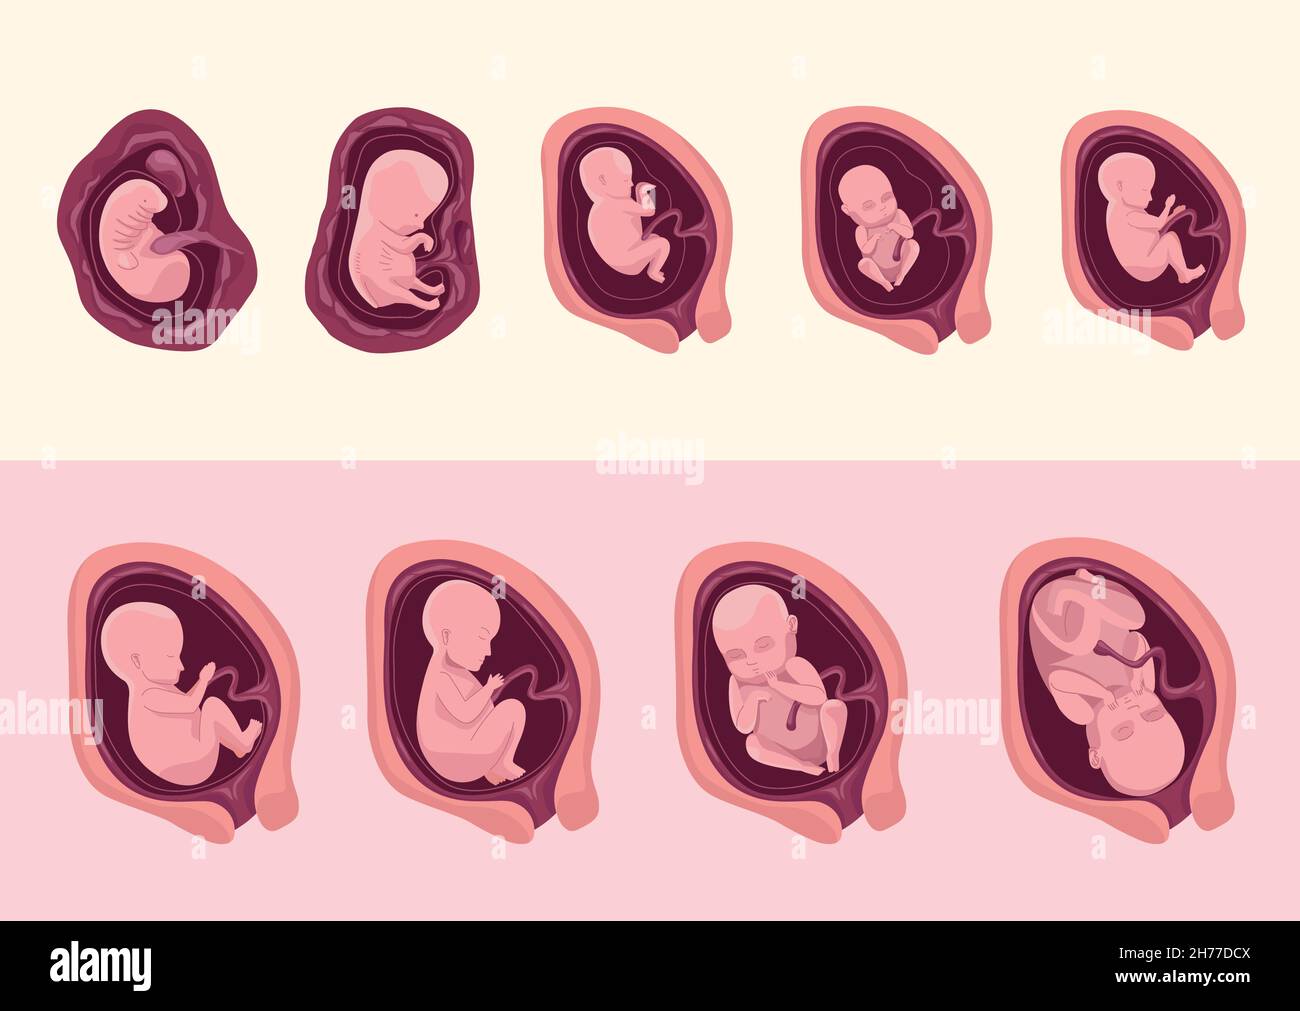 embryo development nine icons Stock Vector